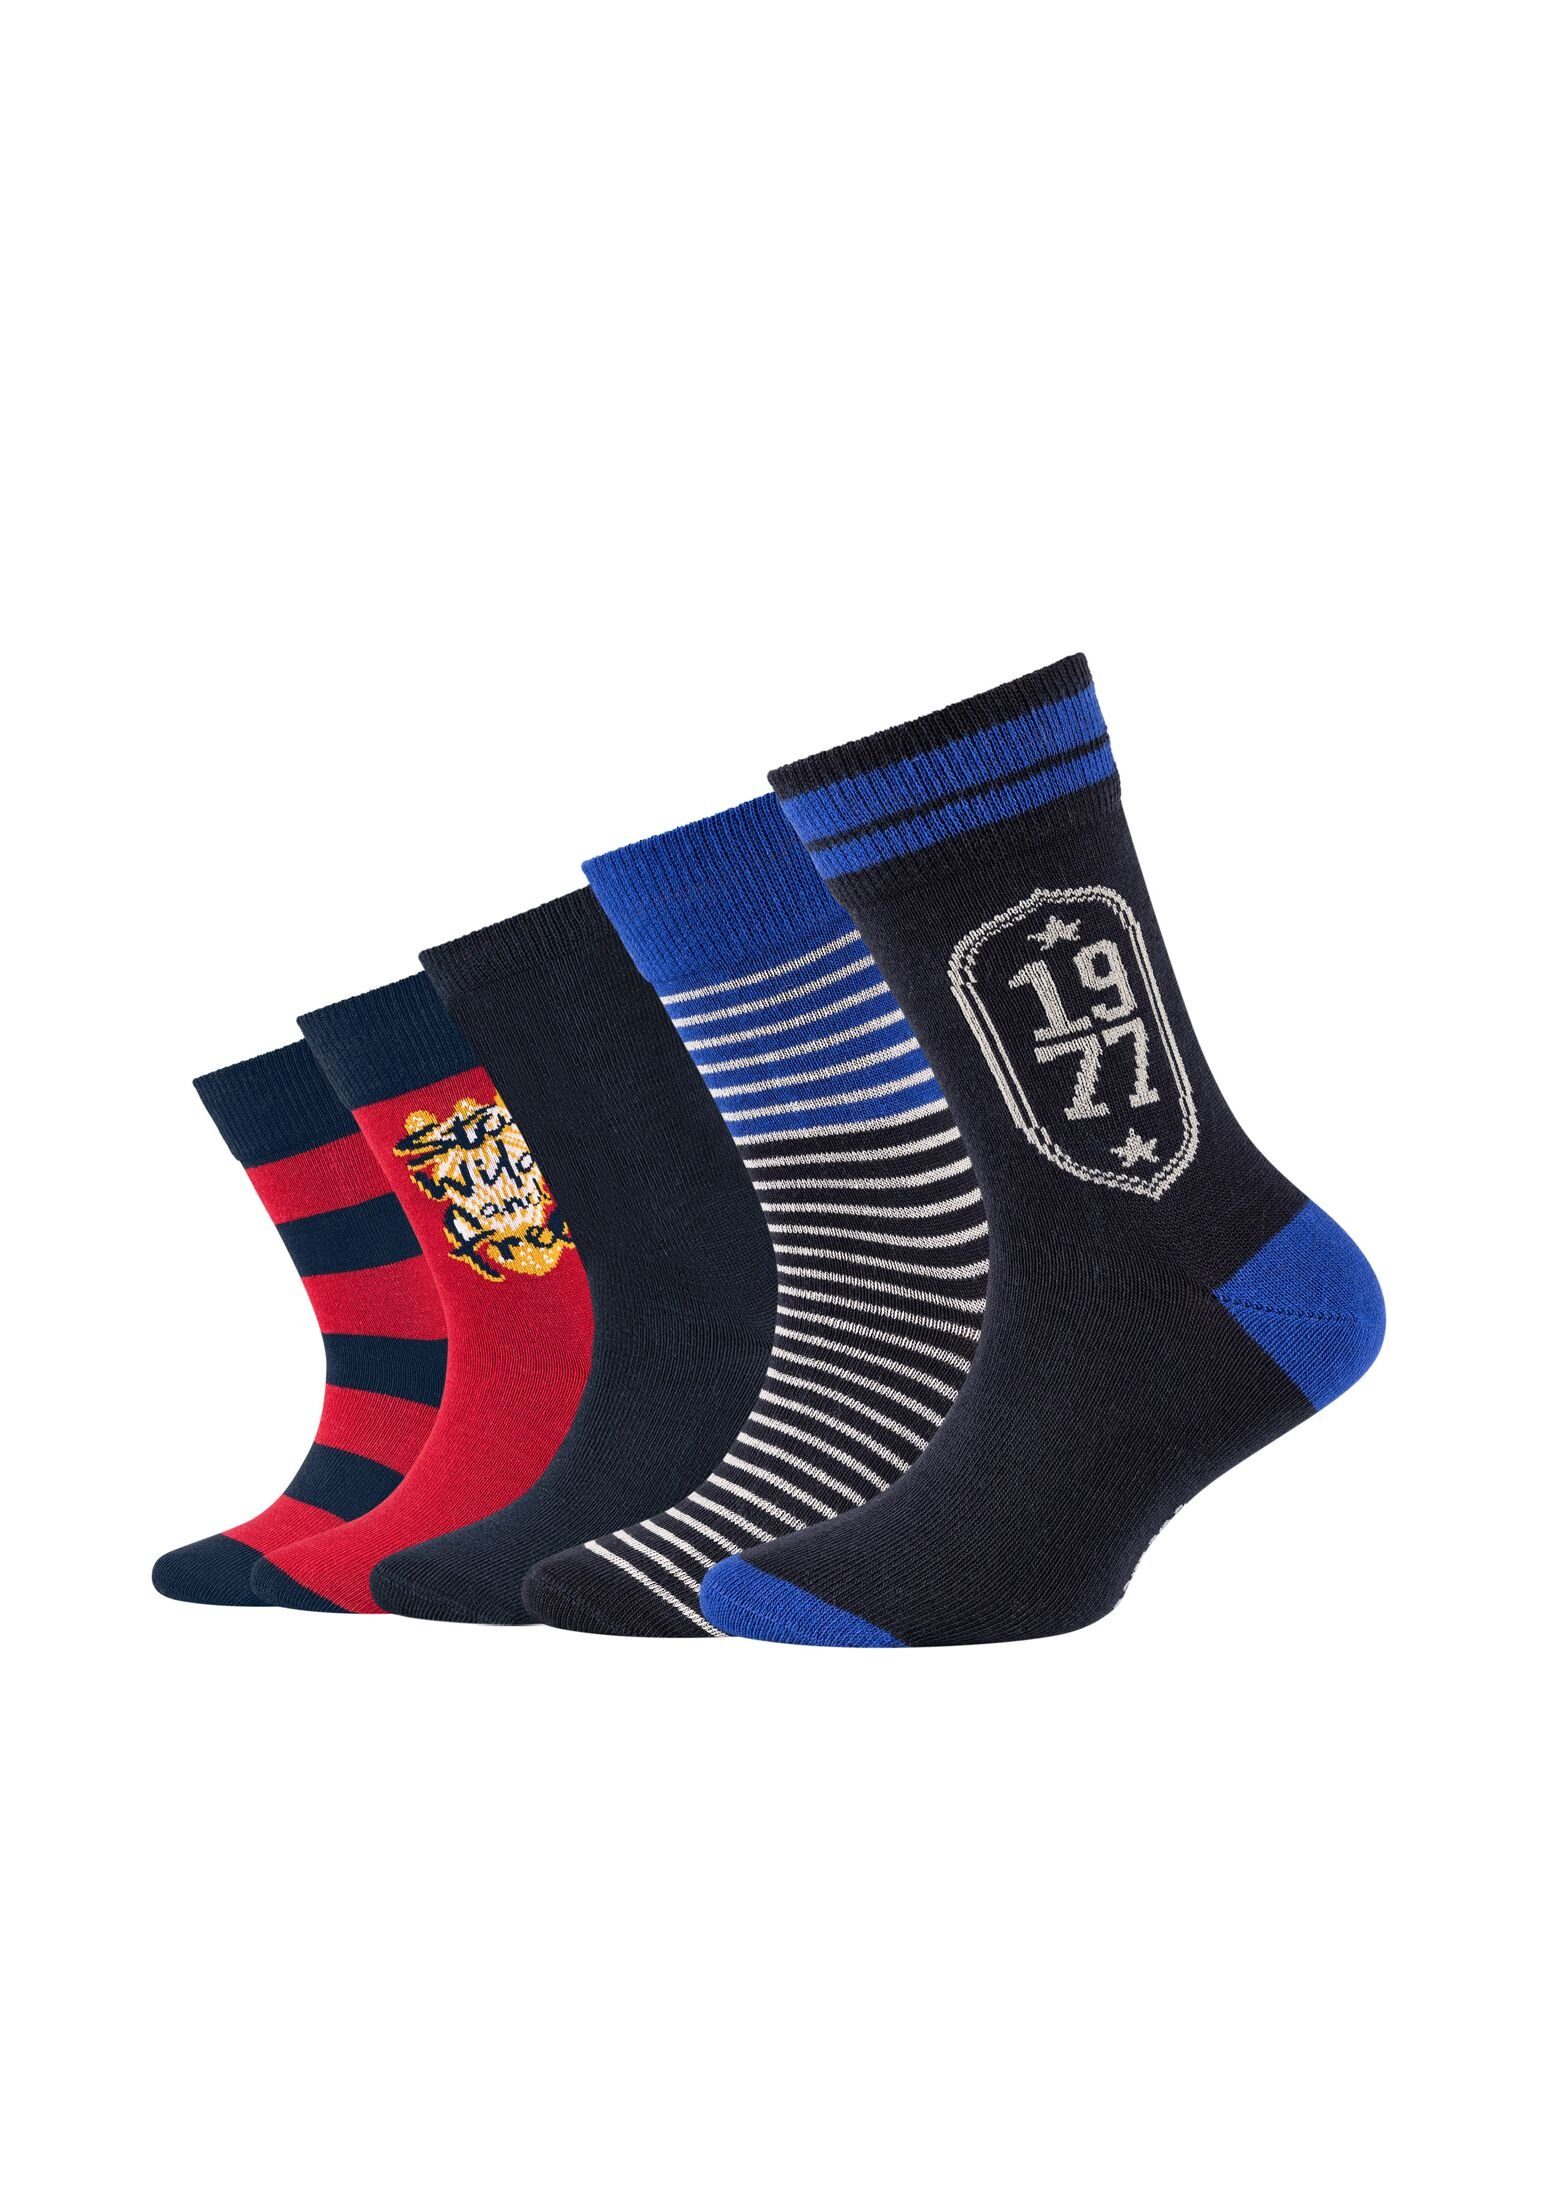 5er Socken Socken Pack Camano navy